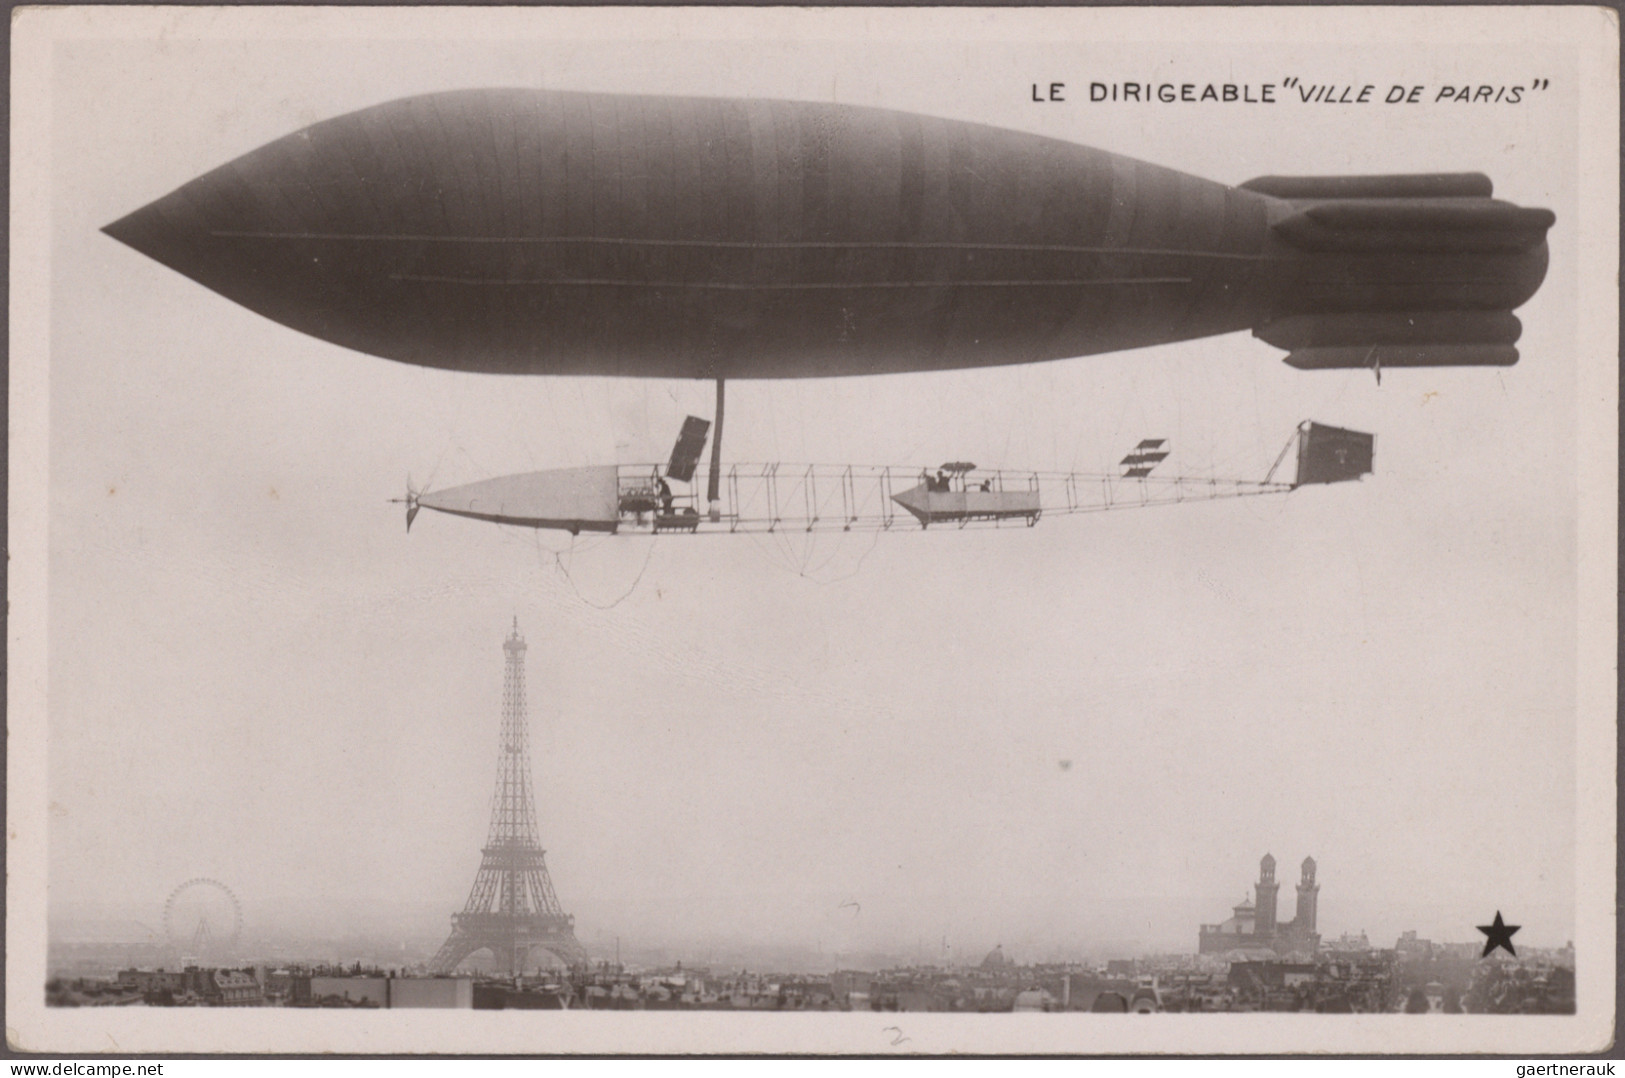 Zeppelin Mail - Germany: 1929/1939, Umfangreiche interessante Sammlung mit ca. 4